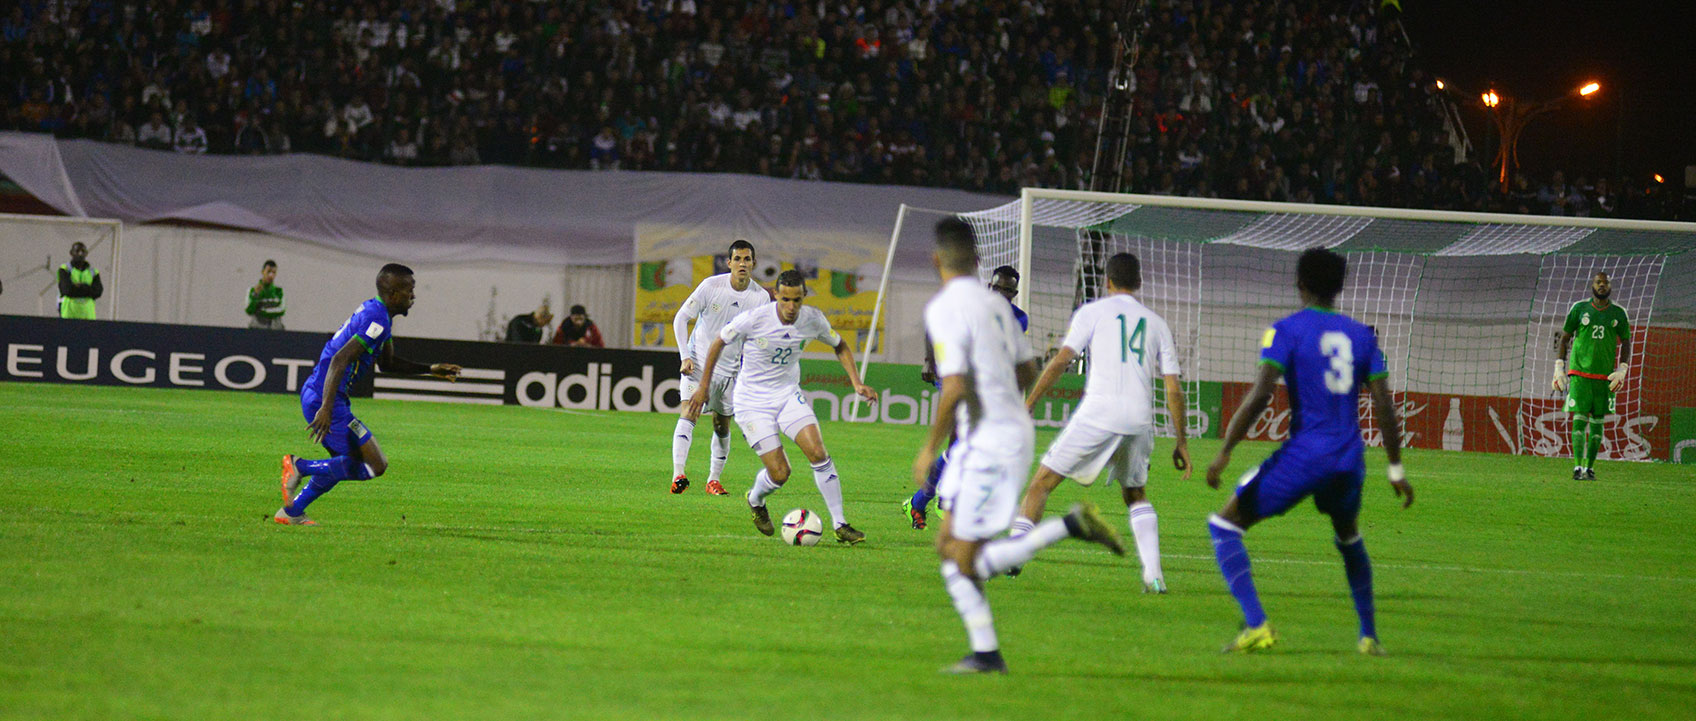 الجزائر 4-1 تنزانيا لقاء ودي فوز معنوي والاختبار أمام إيران 2018-03-2220:00:32.284028-algerie-tanzanie1-1447807870